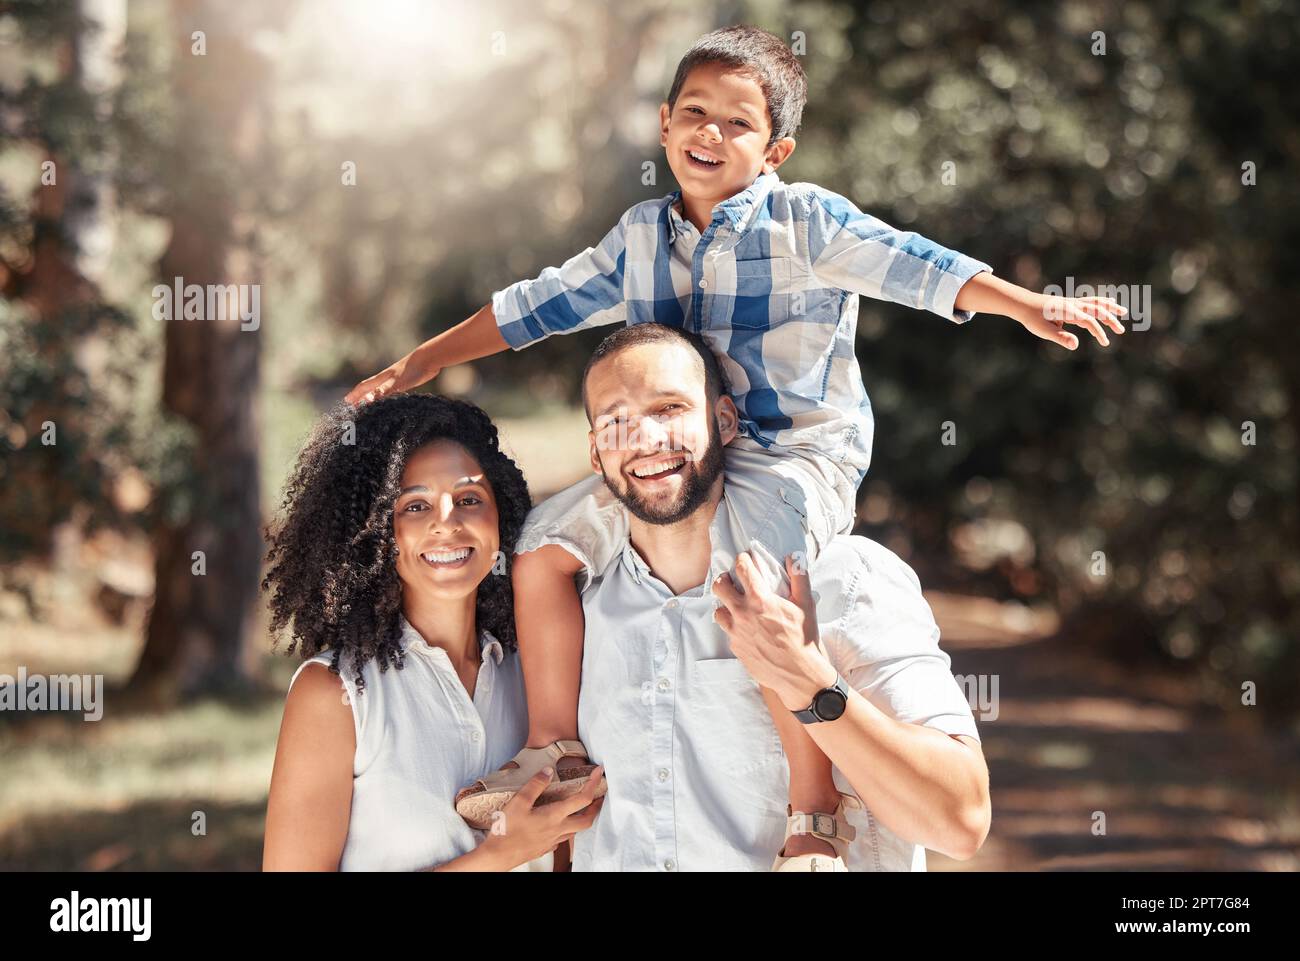 Glücklich, lächeln und Porträt einer Familie im Wald, die im Urlaub Spaß in der Natur hat. Glück, Liebe und fürsorgliche Eltern aus puerto rico wi Stockfoto